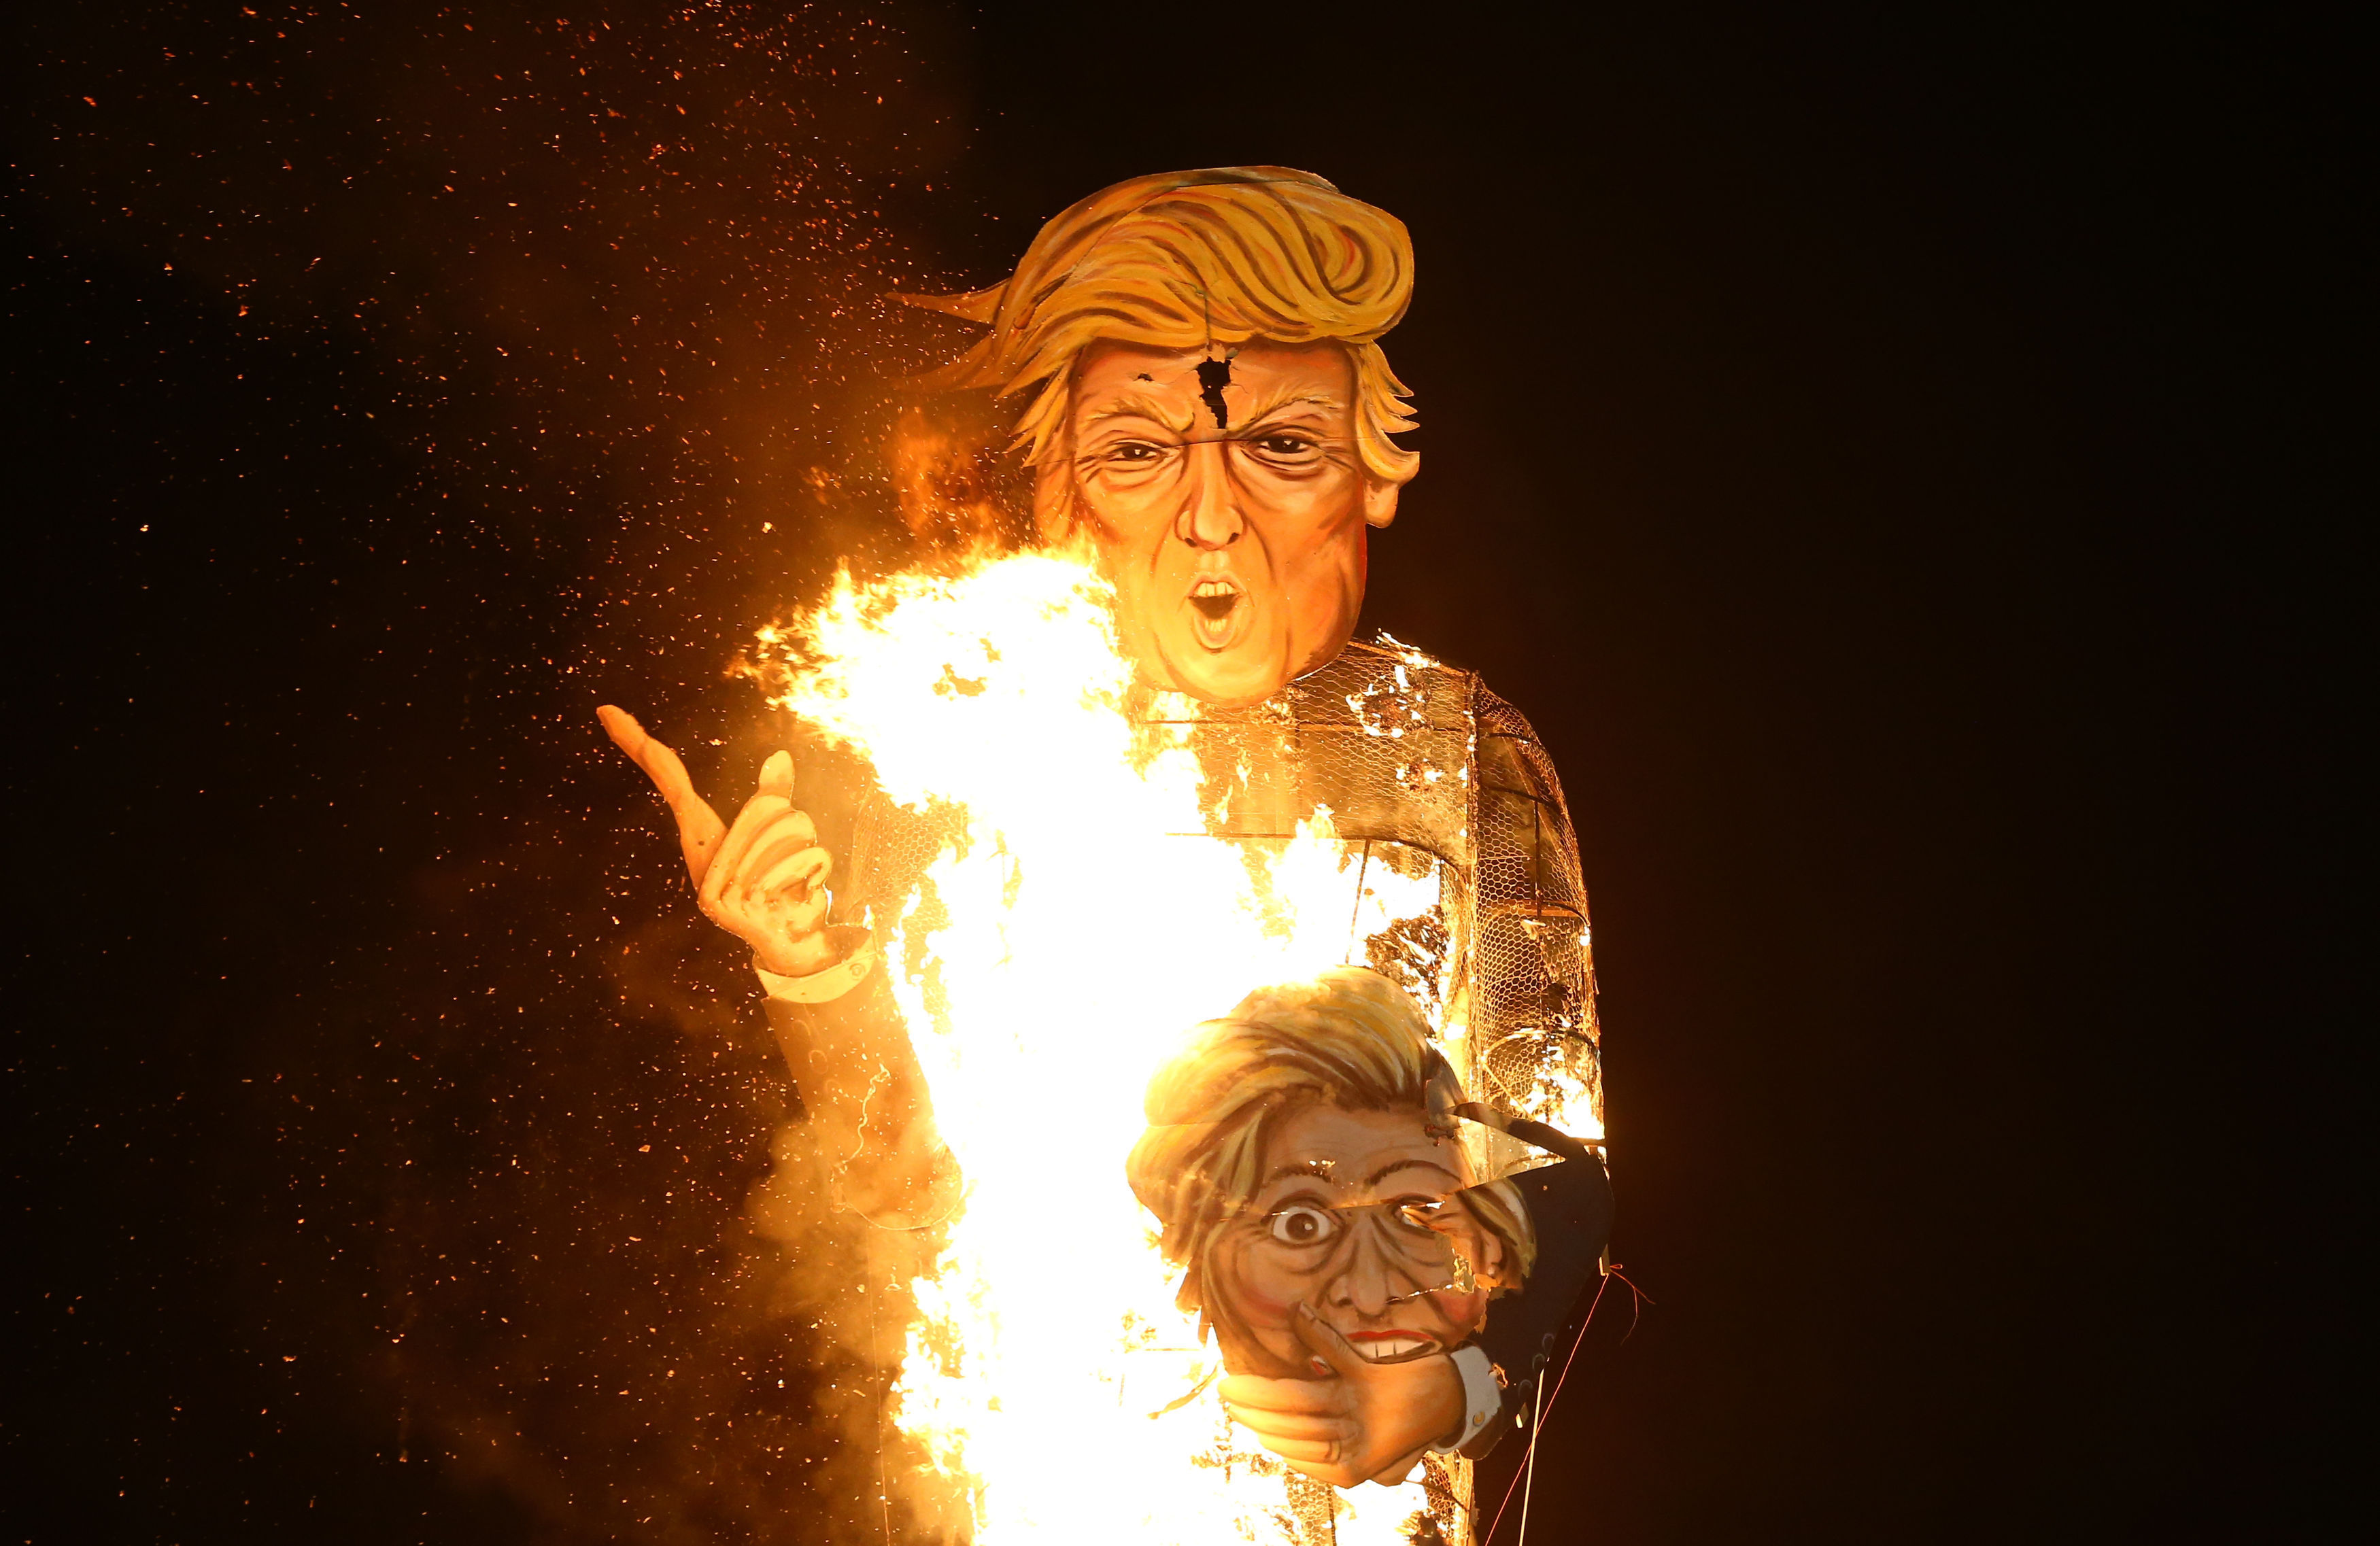 The Edenbridge Bonfire Society celebrity guy, US Presidential hopeful Donald Trump, is set on fire in Edenbridge, Kent, in 2016 